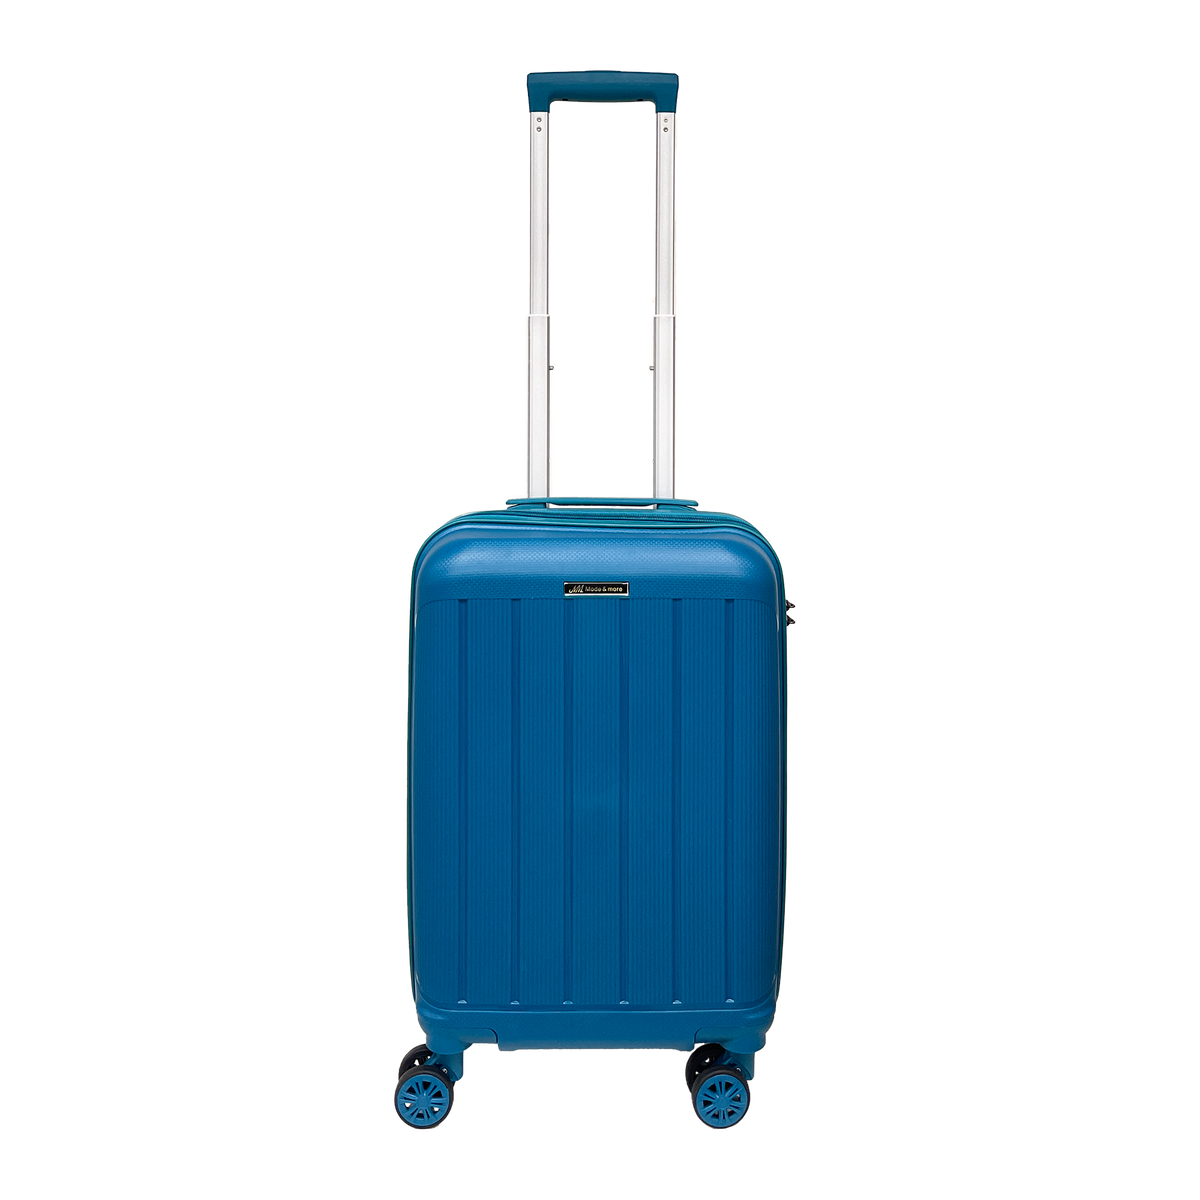 Handgepäck aus leichtem, weichem Polypropylen 55x36x25cm mit TSA-Schloss und hochwertigem, ultraleichtem Trolley